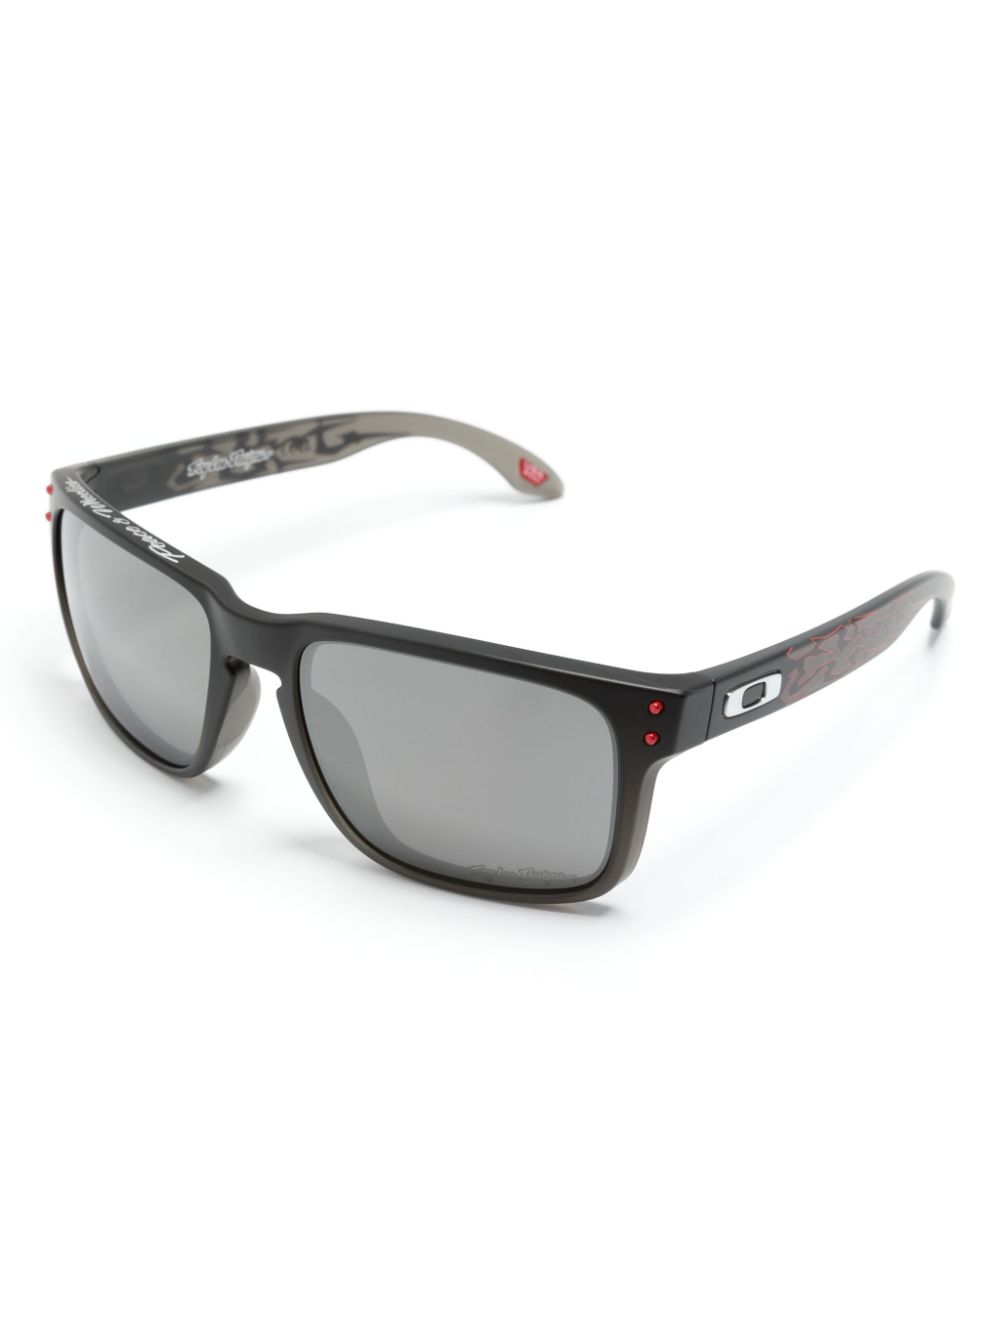 Holbrook square-frame sunglasses<BR/><BR/><BR/>